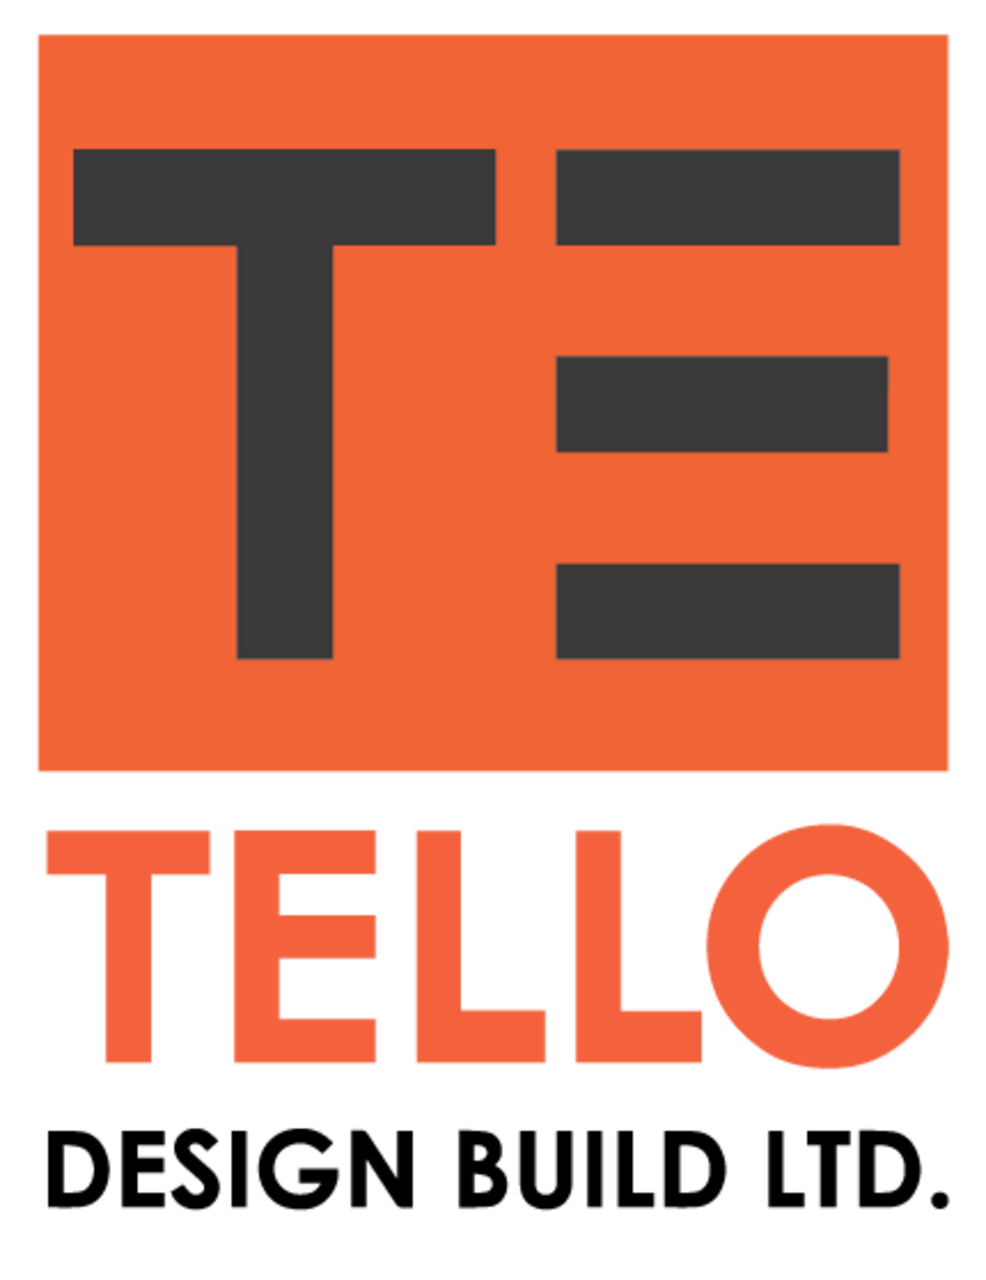 Tello Design Build Ltd.'s logo